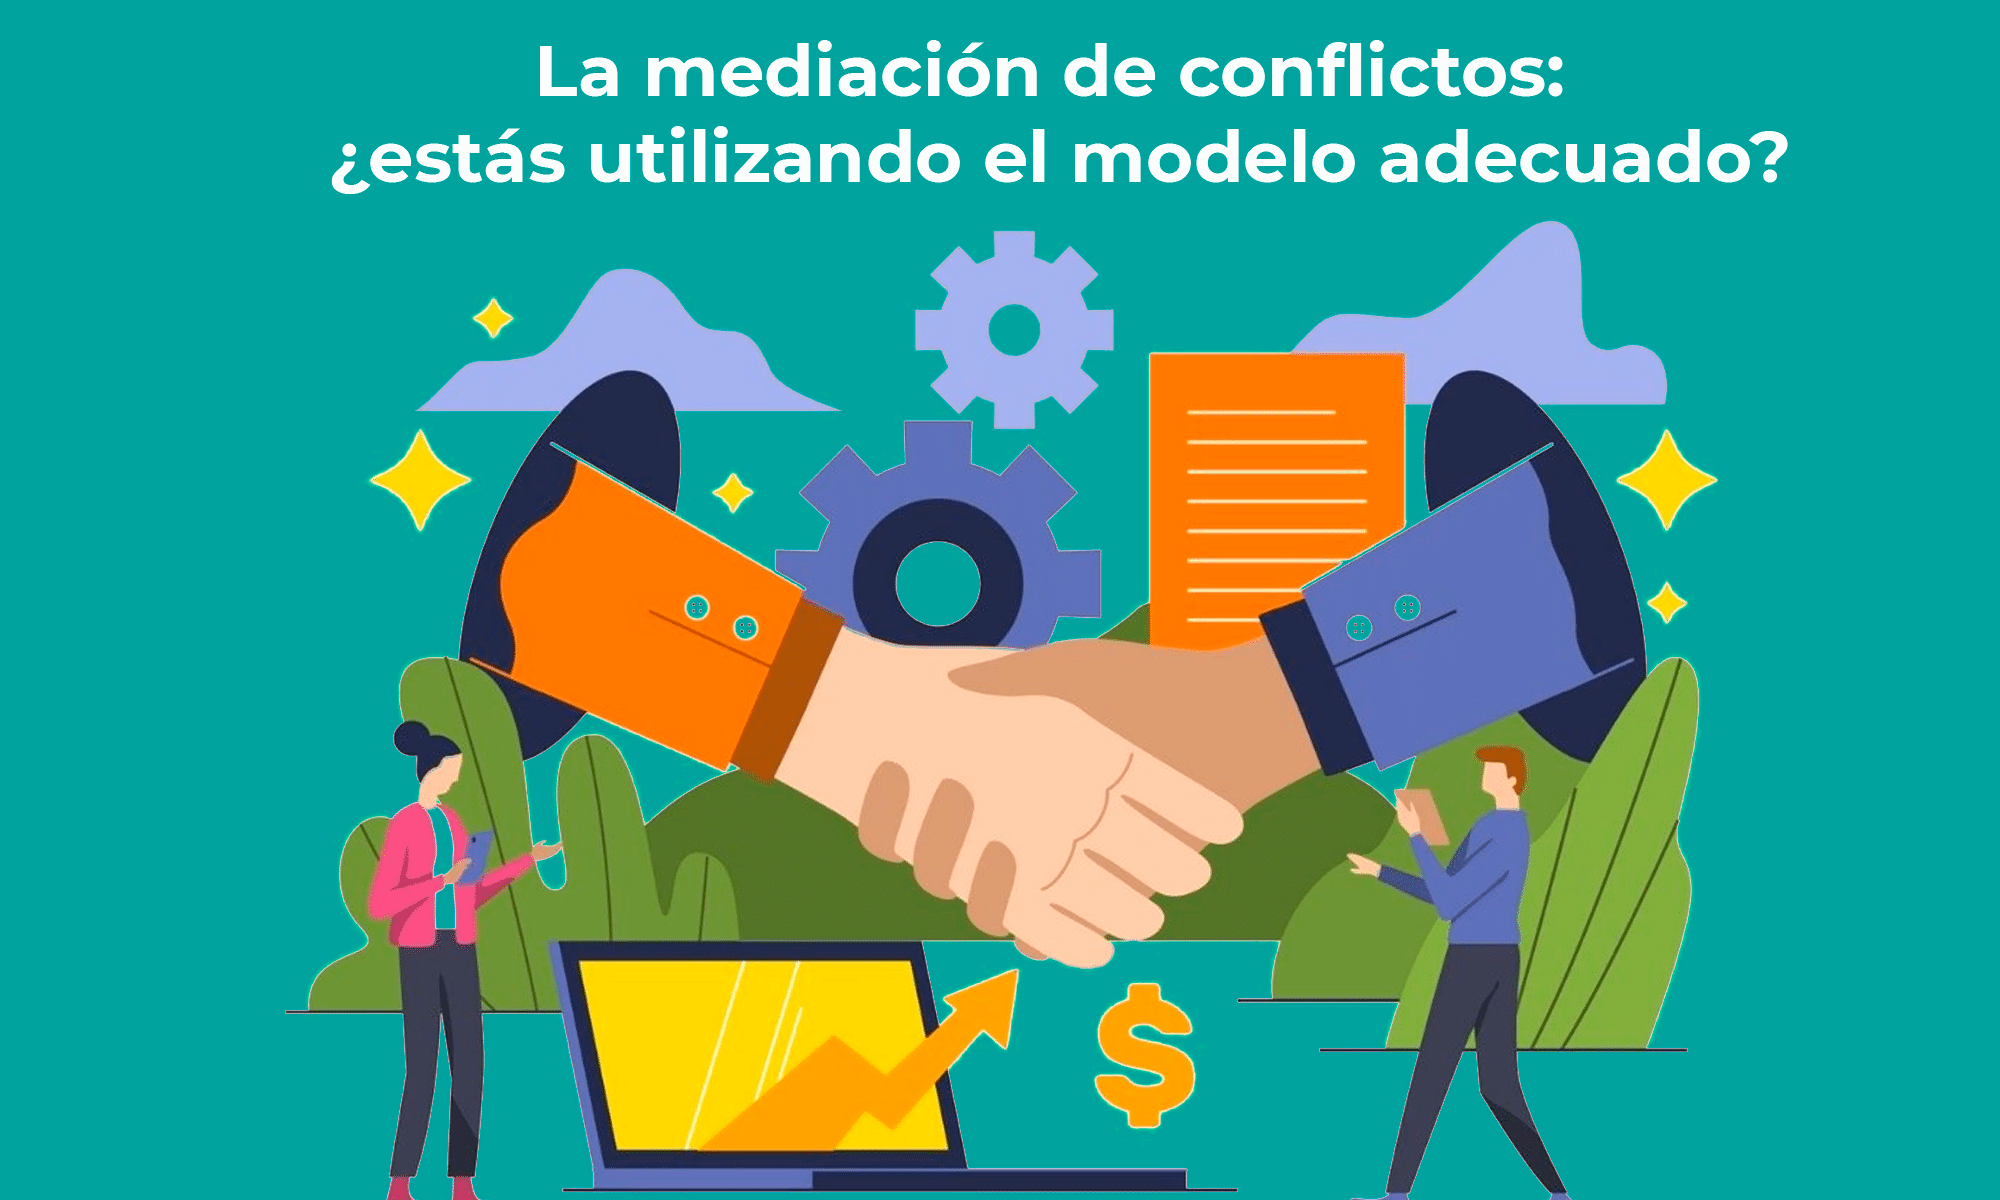 La mediación de conflictos: ¿estás utilizando el modelo adecuado?